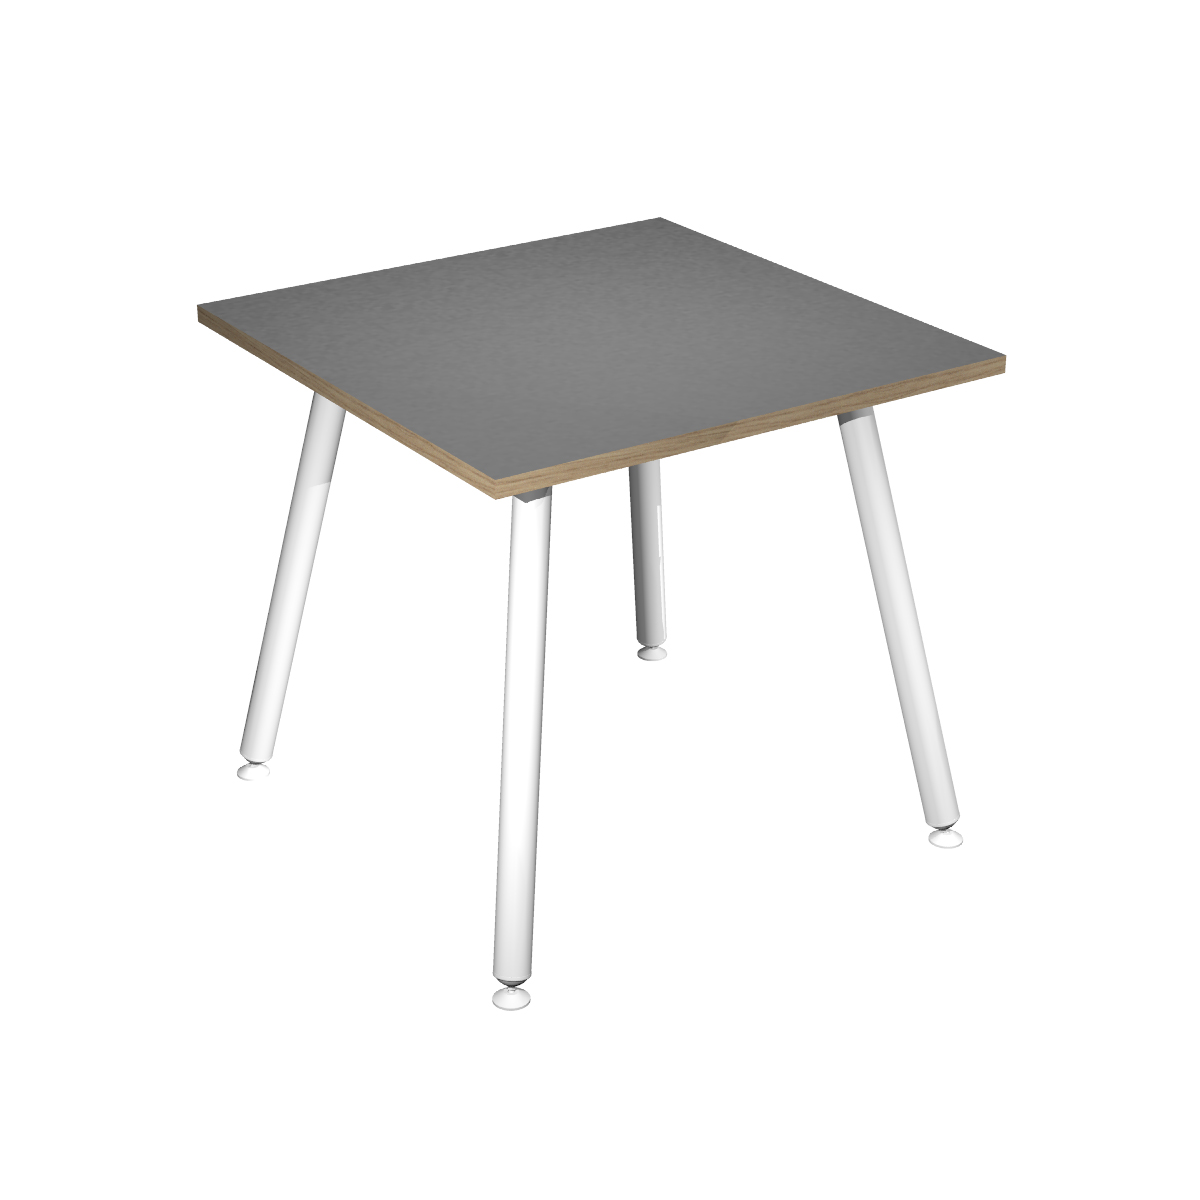 Table haute LEONARDO - 80 x 80 x 105 cm - Pieds métal blancs - Anthracite chants chêne